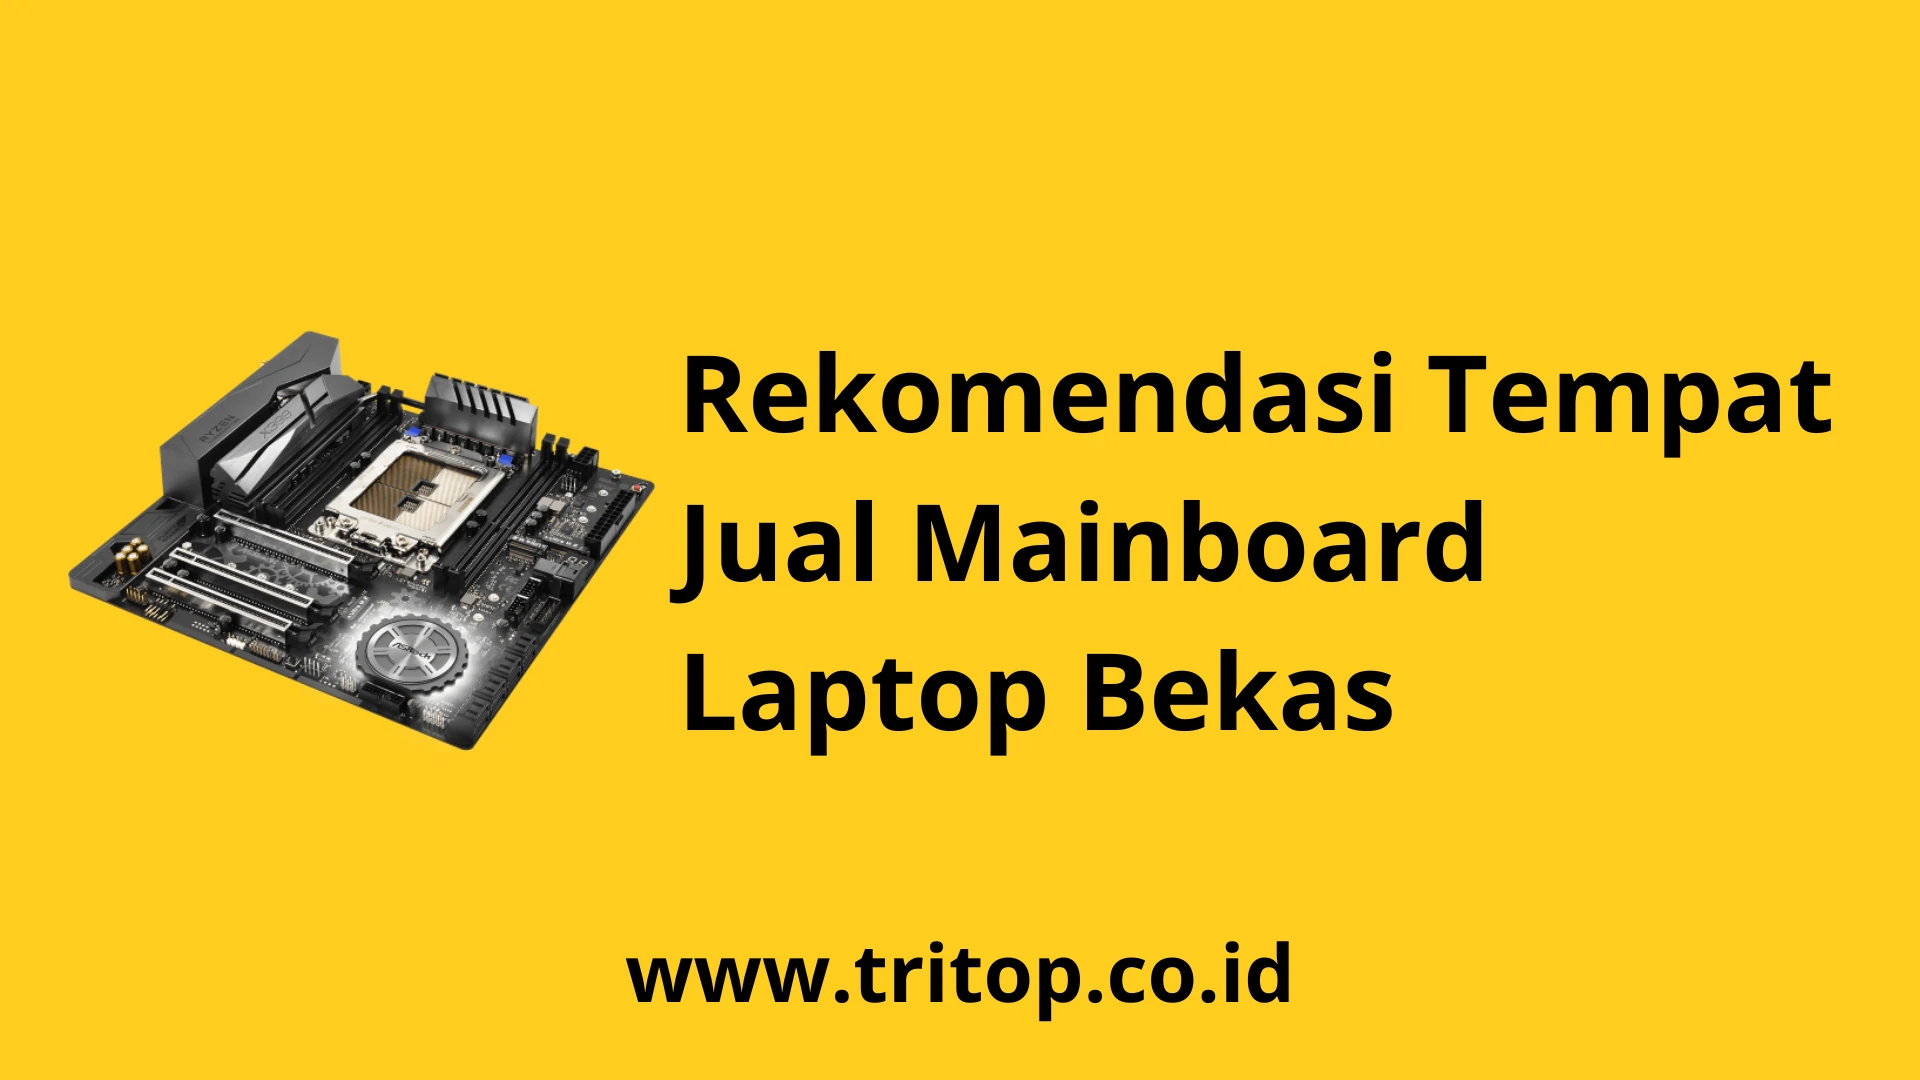 Jual Mainboard Laptop Bekas www.tritop.co.id